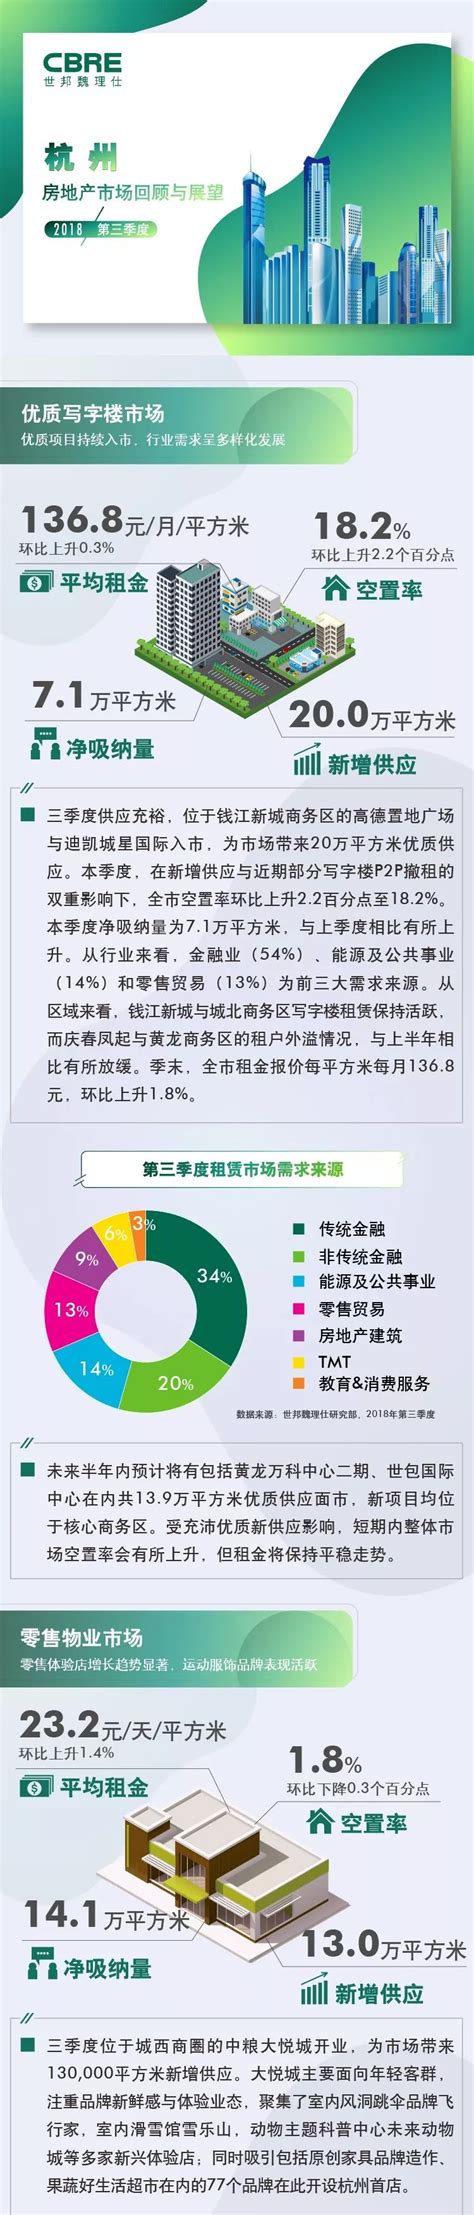 2022年1-3月杭州房地产企业销售业绩TOP20-房产频道-和讯网